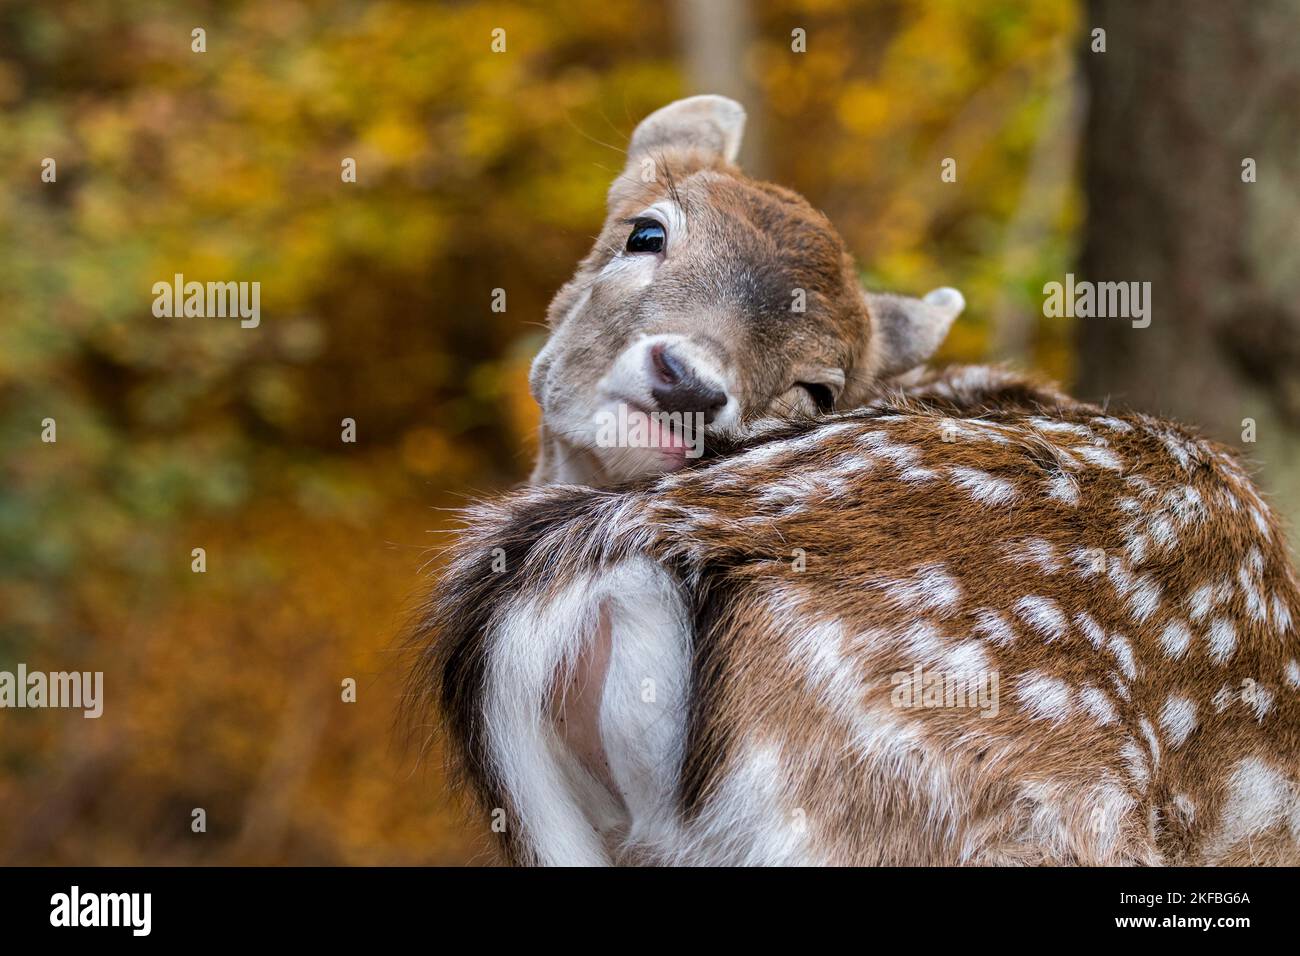 Ciervo en barbecho europeo (Dama dama) primer plano de fawn arreglando su piel en el bosque de otoño Foto de stock